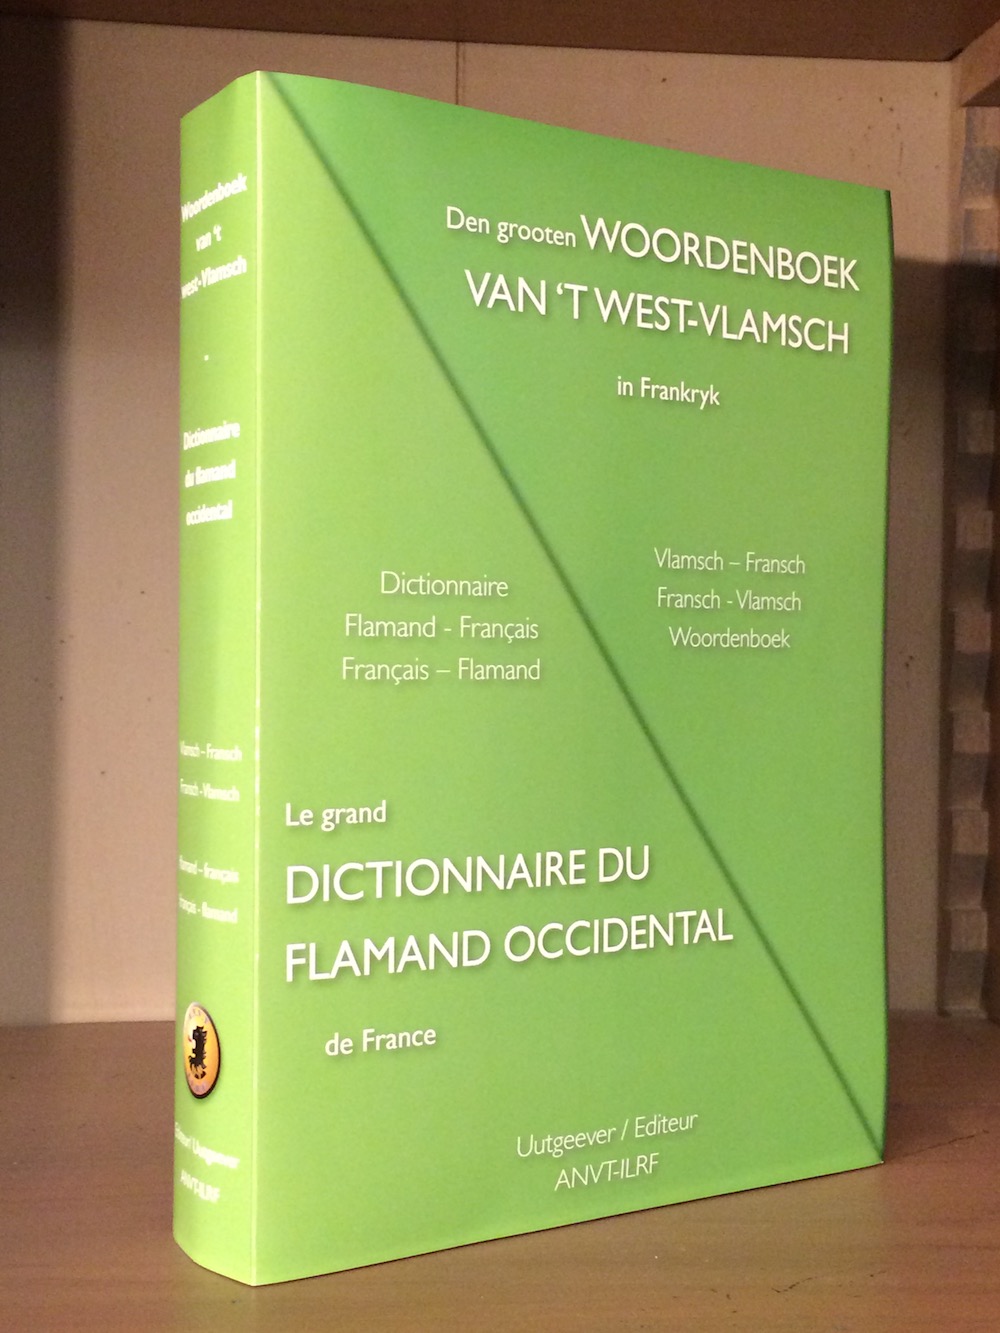 Dictionnaire du flamand occidental - Woordenboek van 't West-Vlamsch